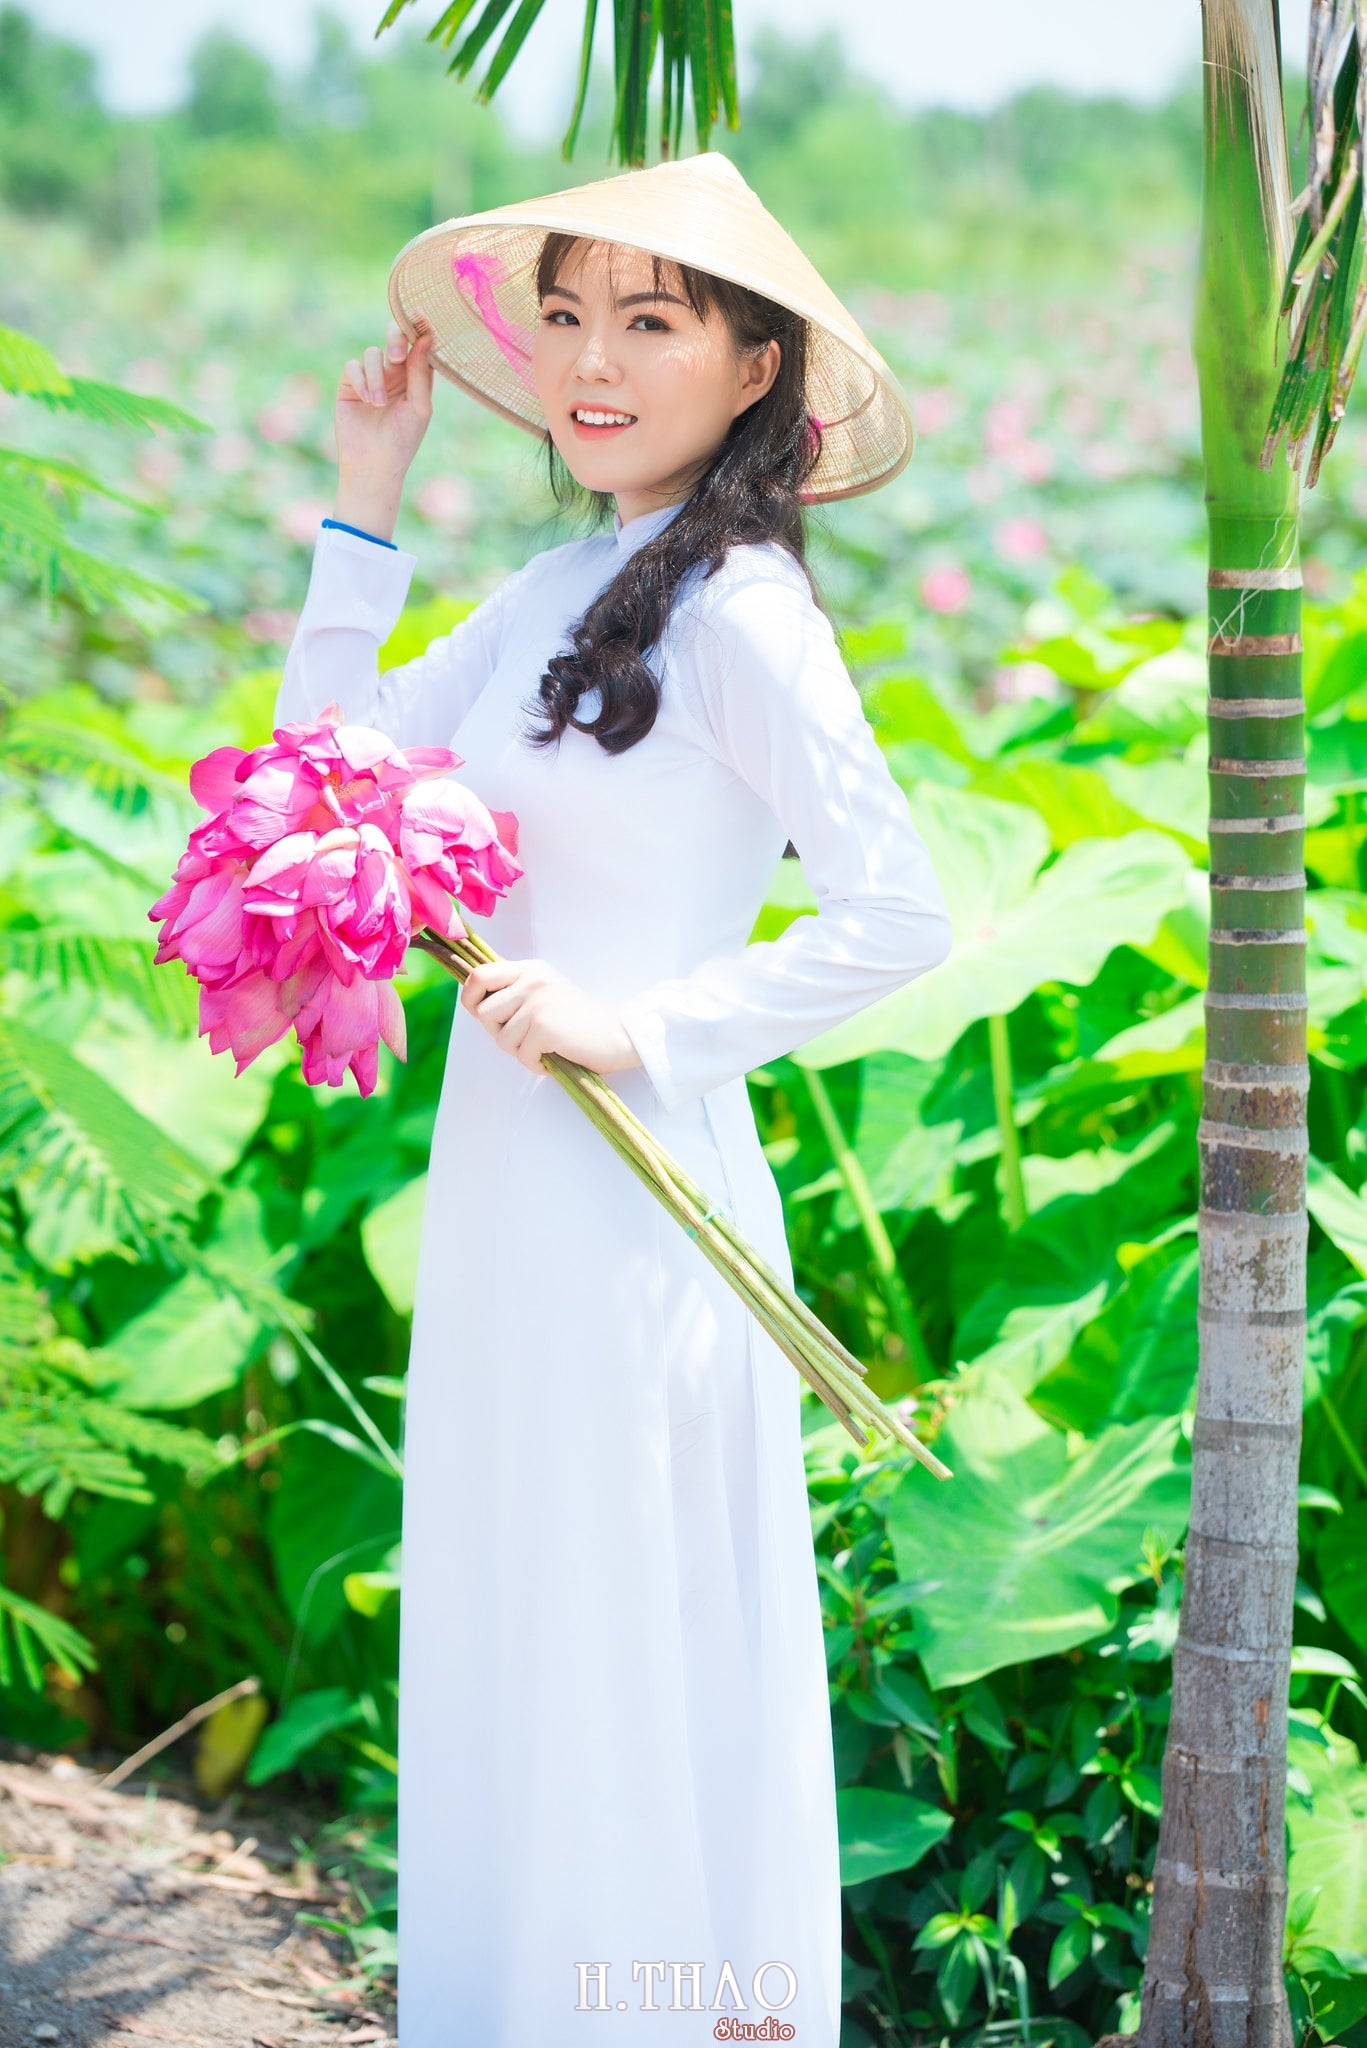 %E1%BA%A2nh %C3%A1o d%C3%A0i hoa sen 11 - Góc ảnh thiếu nữ áo dài bên hoa sen đẹp tinh khôi- HThao Studio